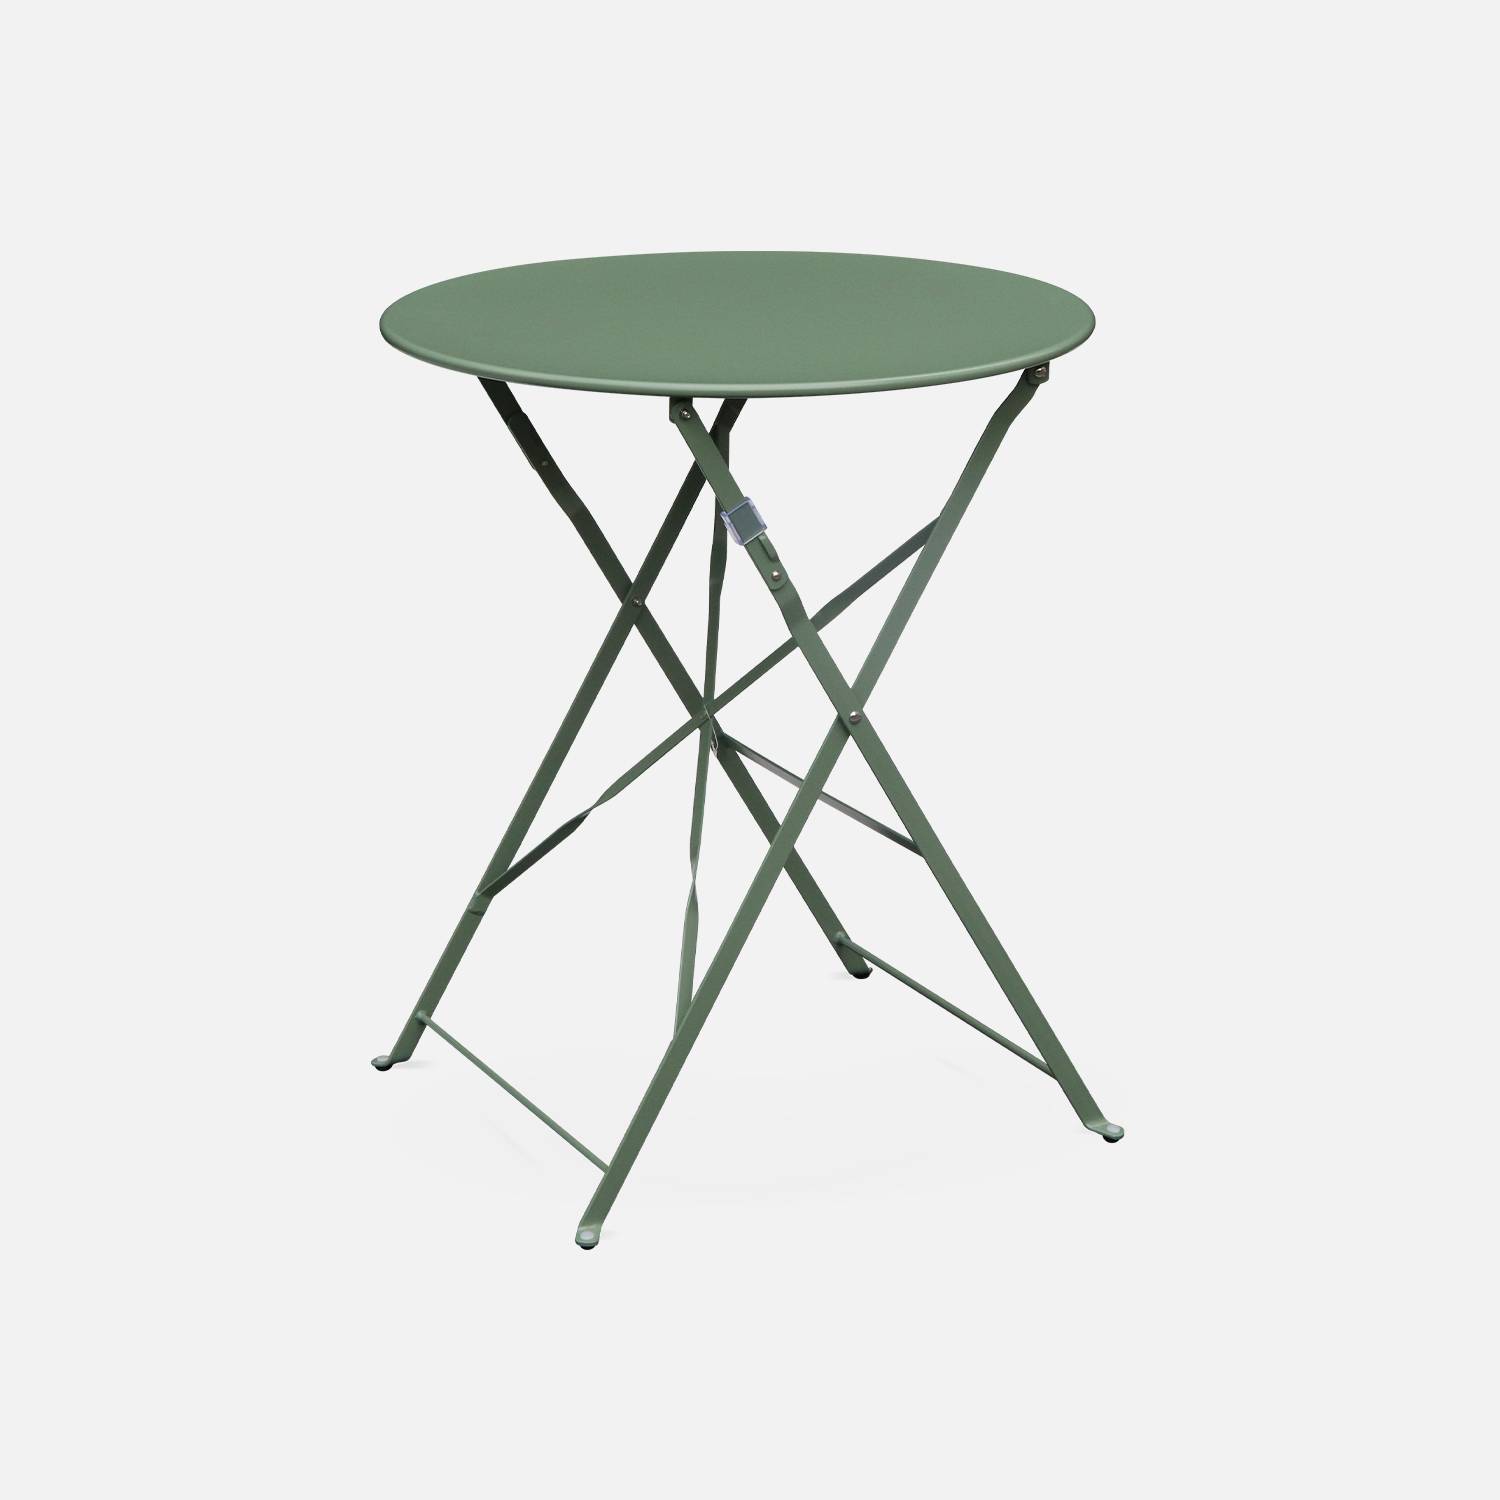 Emilia runde graugrüne Klappbistro-Gartengarnitur, Tisch Ø60 cm mit zwei Klappstühlen, pulverbeschichteter Stahl Photo3